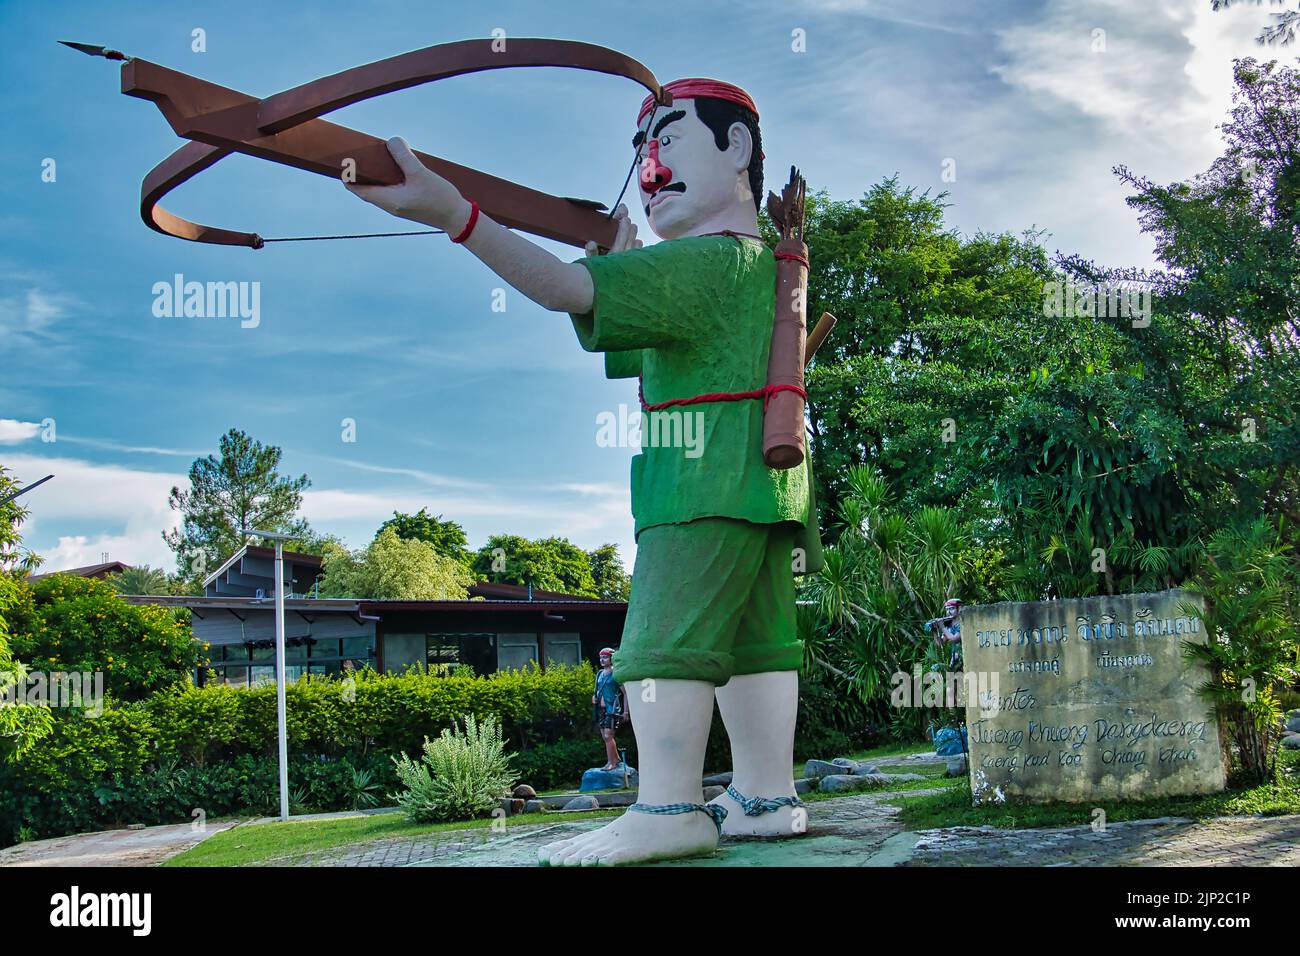 Estatua de Jueng Khueng Dangdaeng, un cazador lao gigante, en Kaeng Khut Khu en Chiang Khan, una ciudad fronteriza entre Tailandia y Laos en el río Mekong Foto de stock